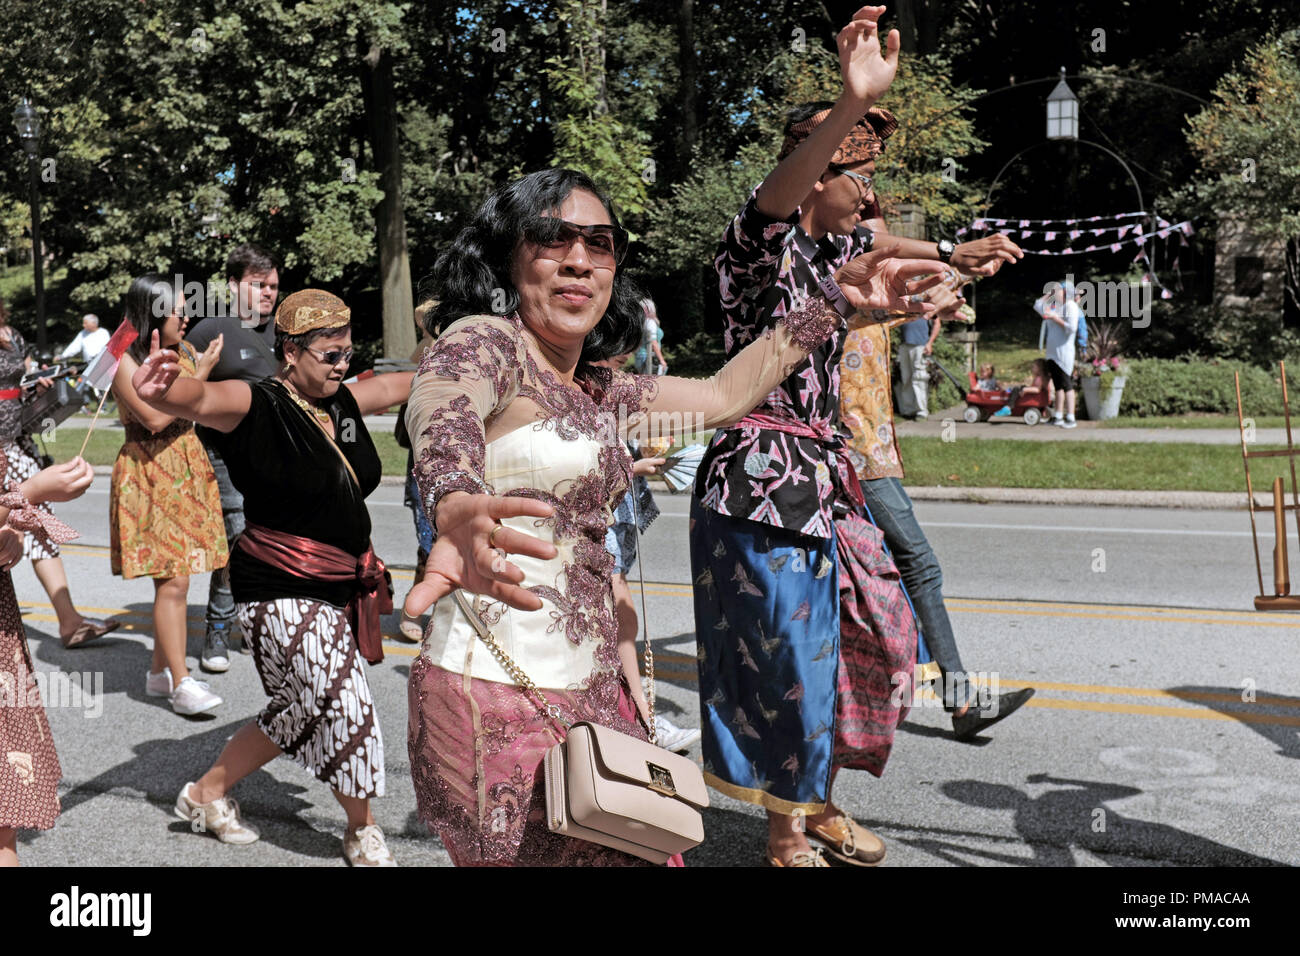 Indonesian-American Gemeinschaft einen traditionellen Tanz aufführen, wie sie in der 73. jährlichen One World Day Parade von Flaggen in Cleveland, Ohio teilnehmen. Stockfoto